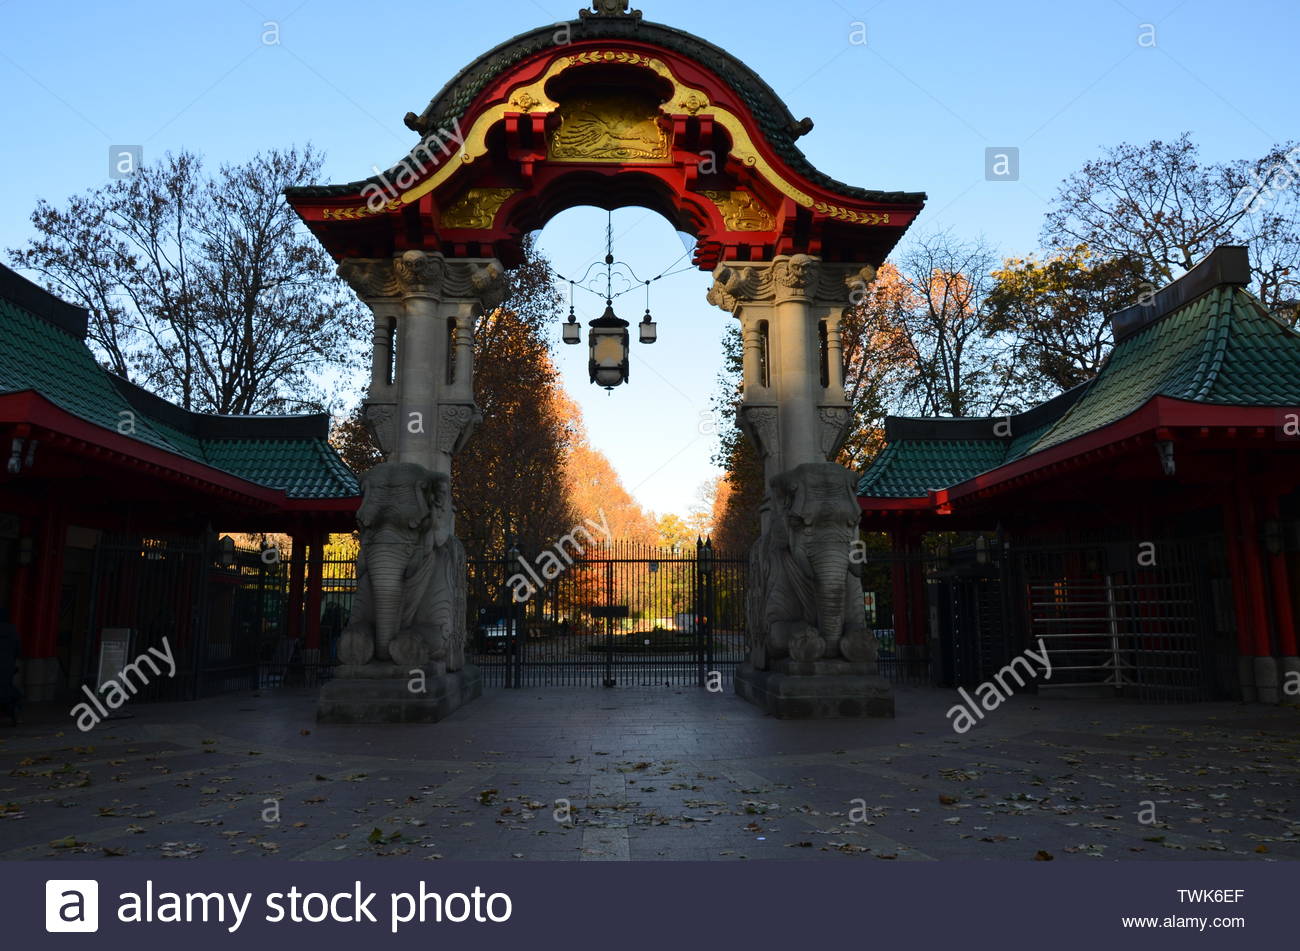 berlin zoo entrance gate germany TWK6EF